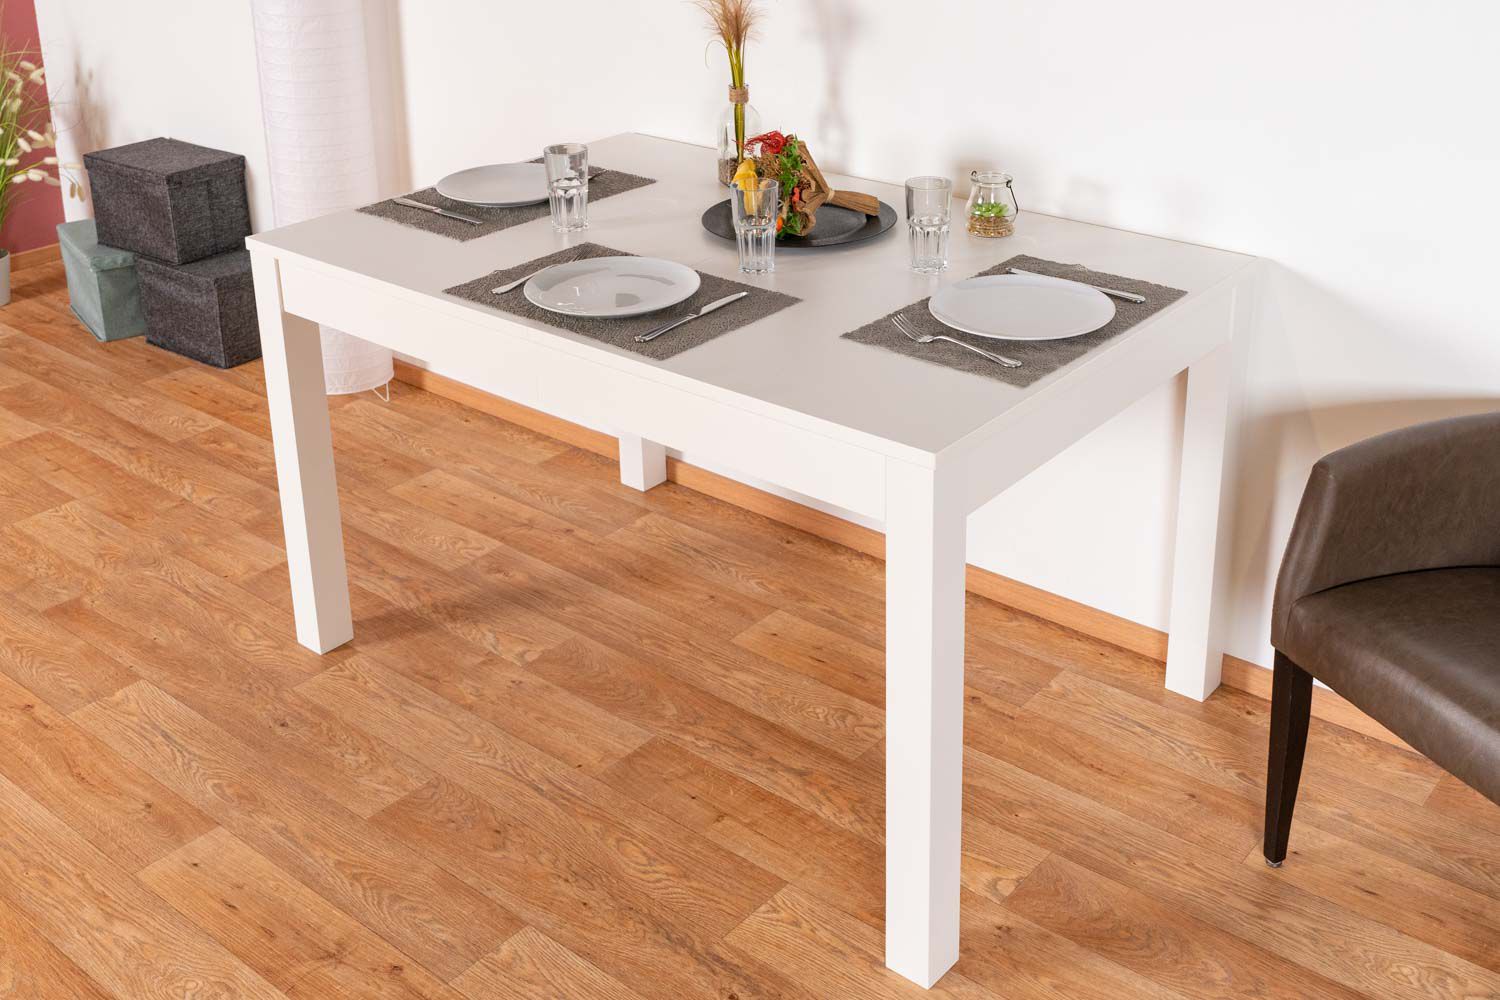 Table de salle à manger extensible, couleur : blanc - Dimensions : 140 - 340 x 90 cm (L x P)